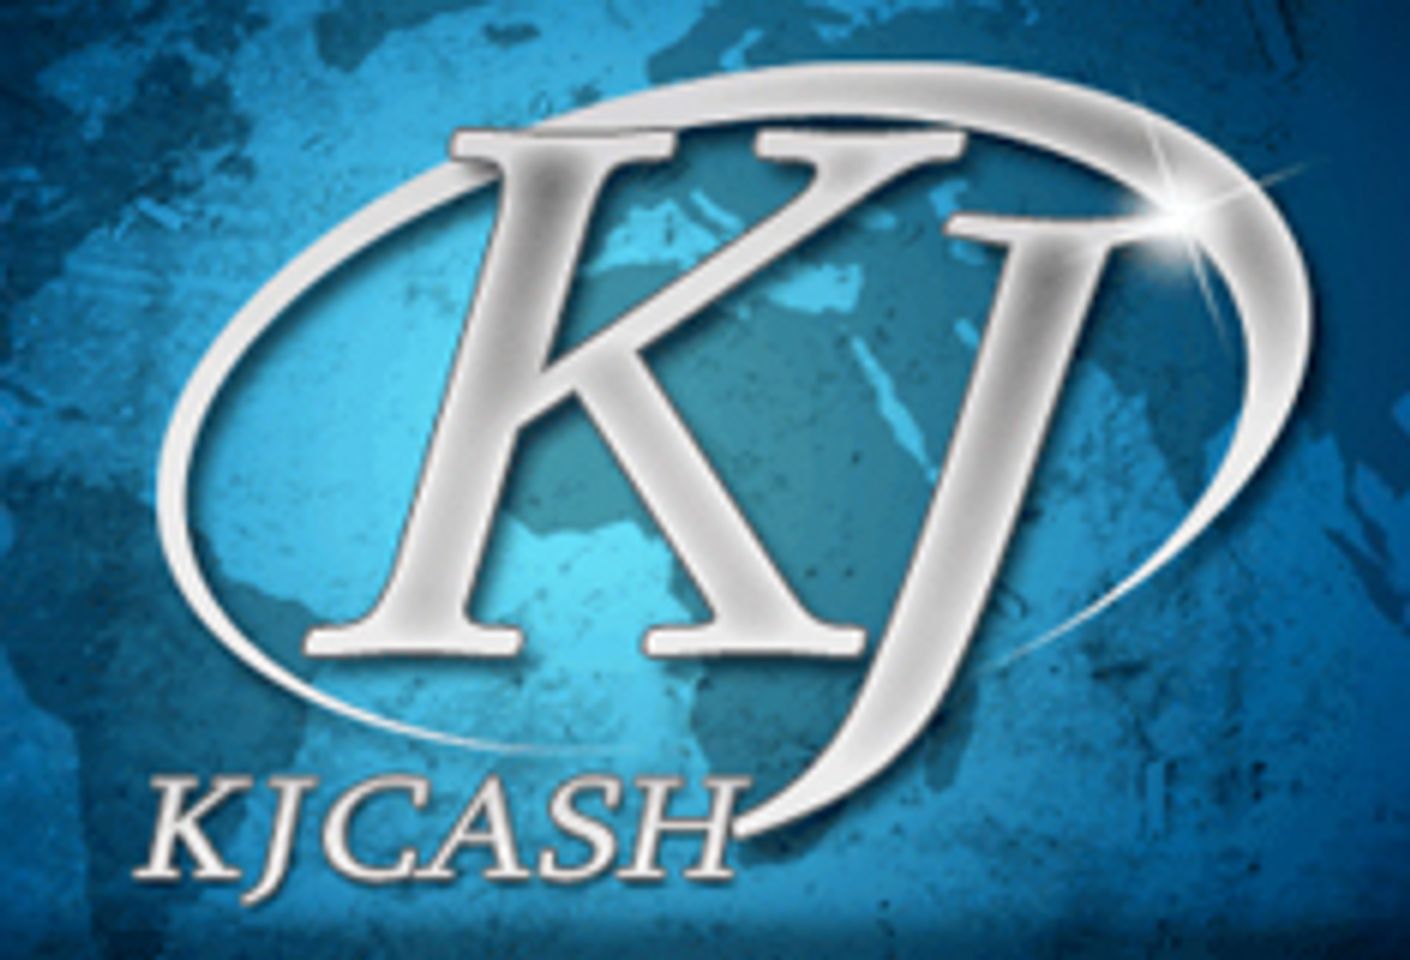 KJCash Re-launches CJXXX.com; Offers Bonuses Up To $1500